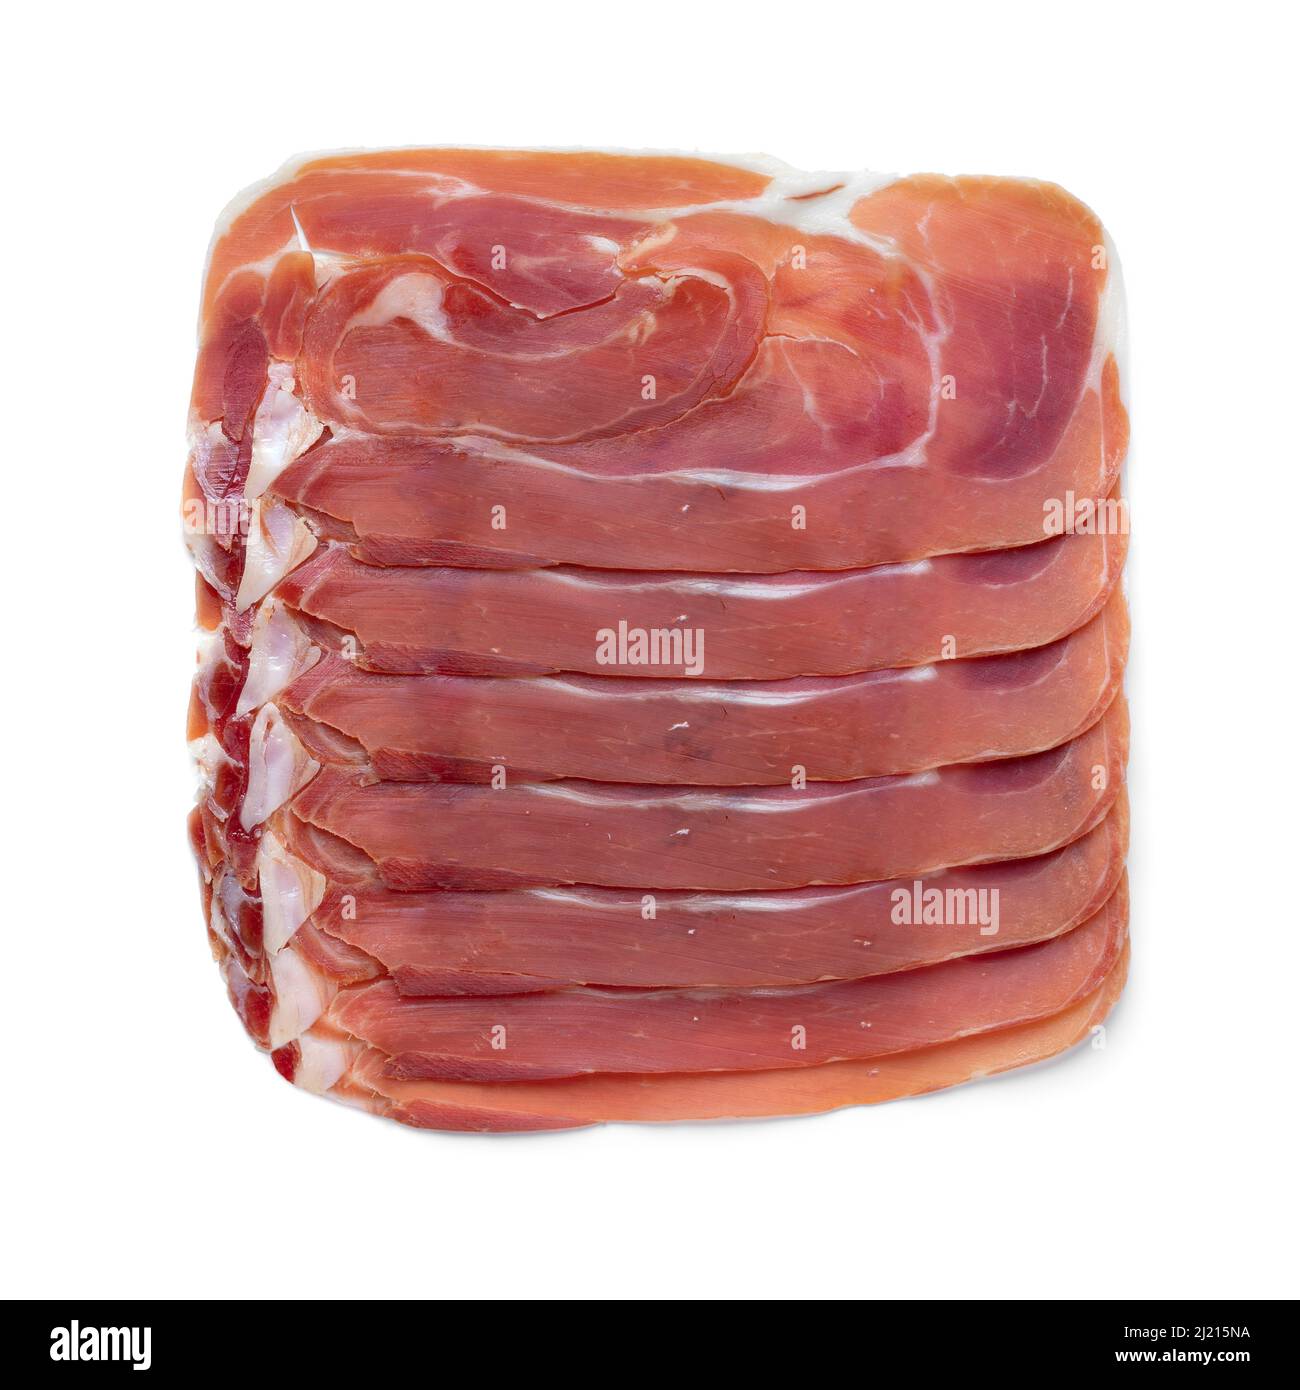 Sliced Spanish raw ham, serrano ham, close up isolated on white background Stock Photo